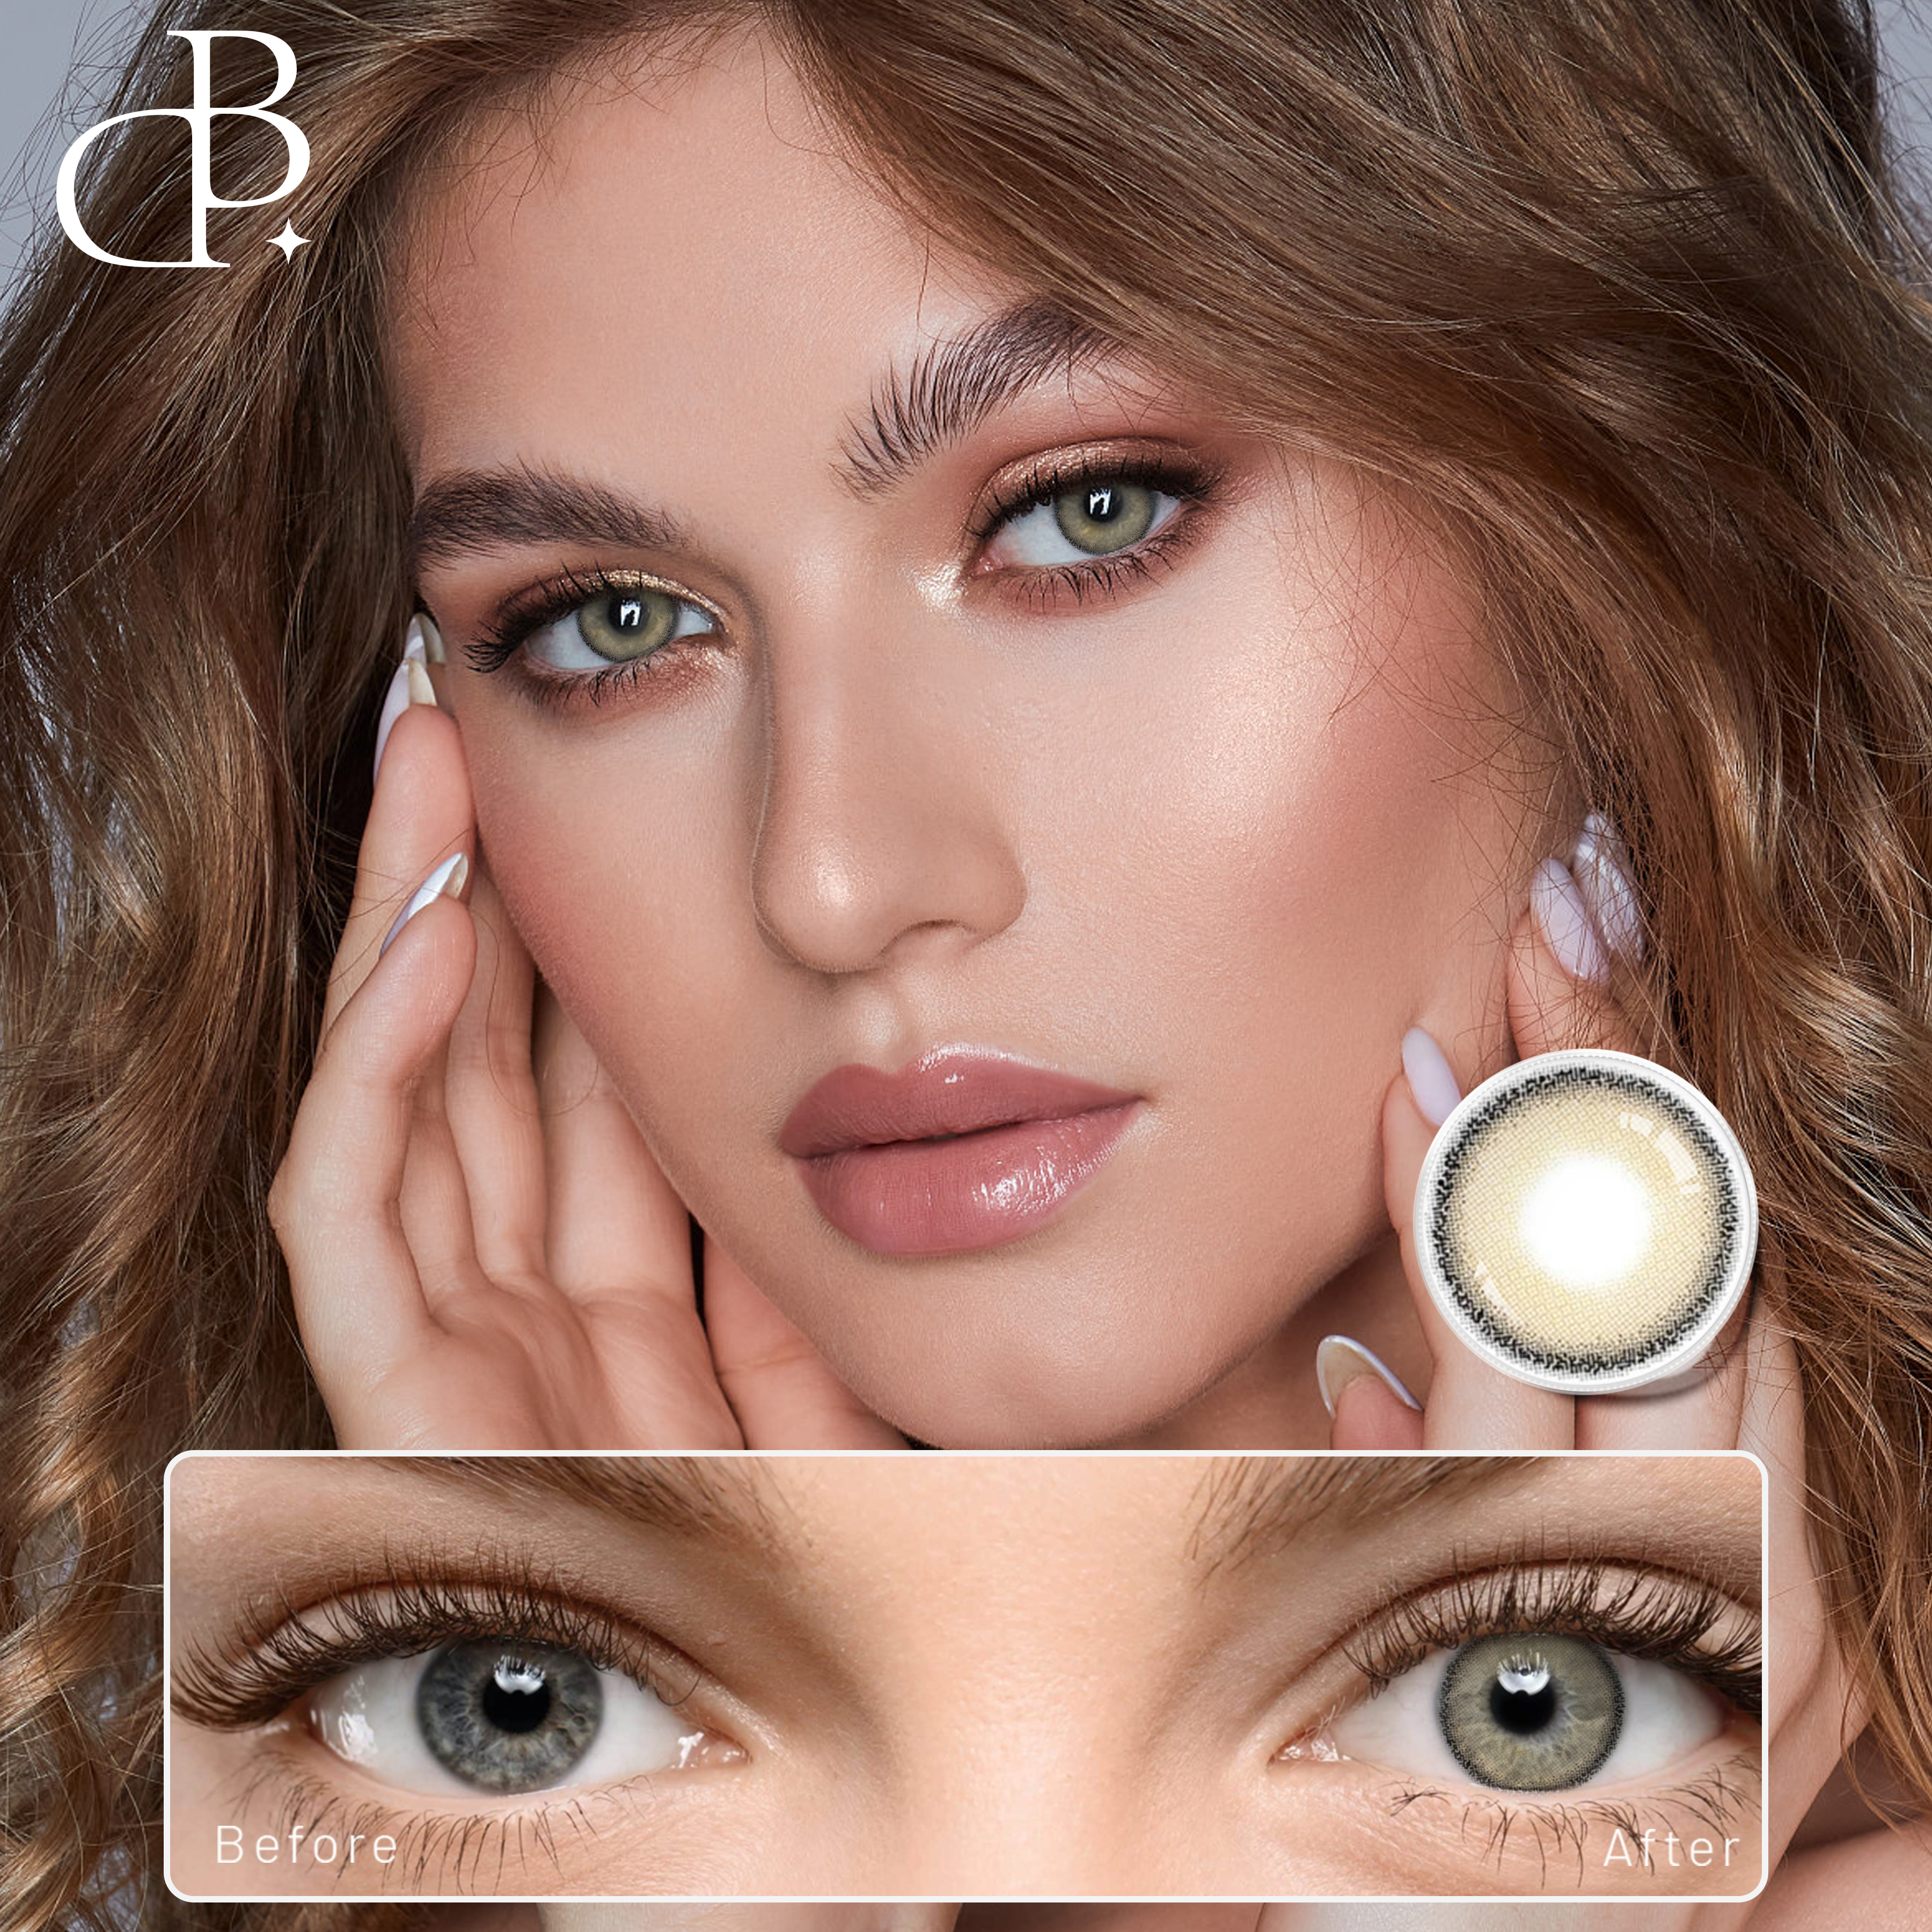 DBeyes veleprodaja kontaktnih leća u boji s prilagođenim logotipom Lentes za oči u boji na recept